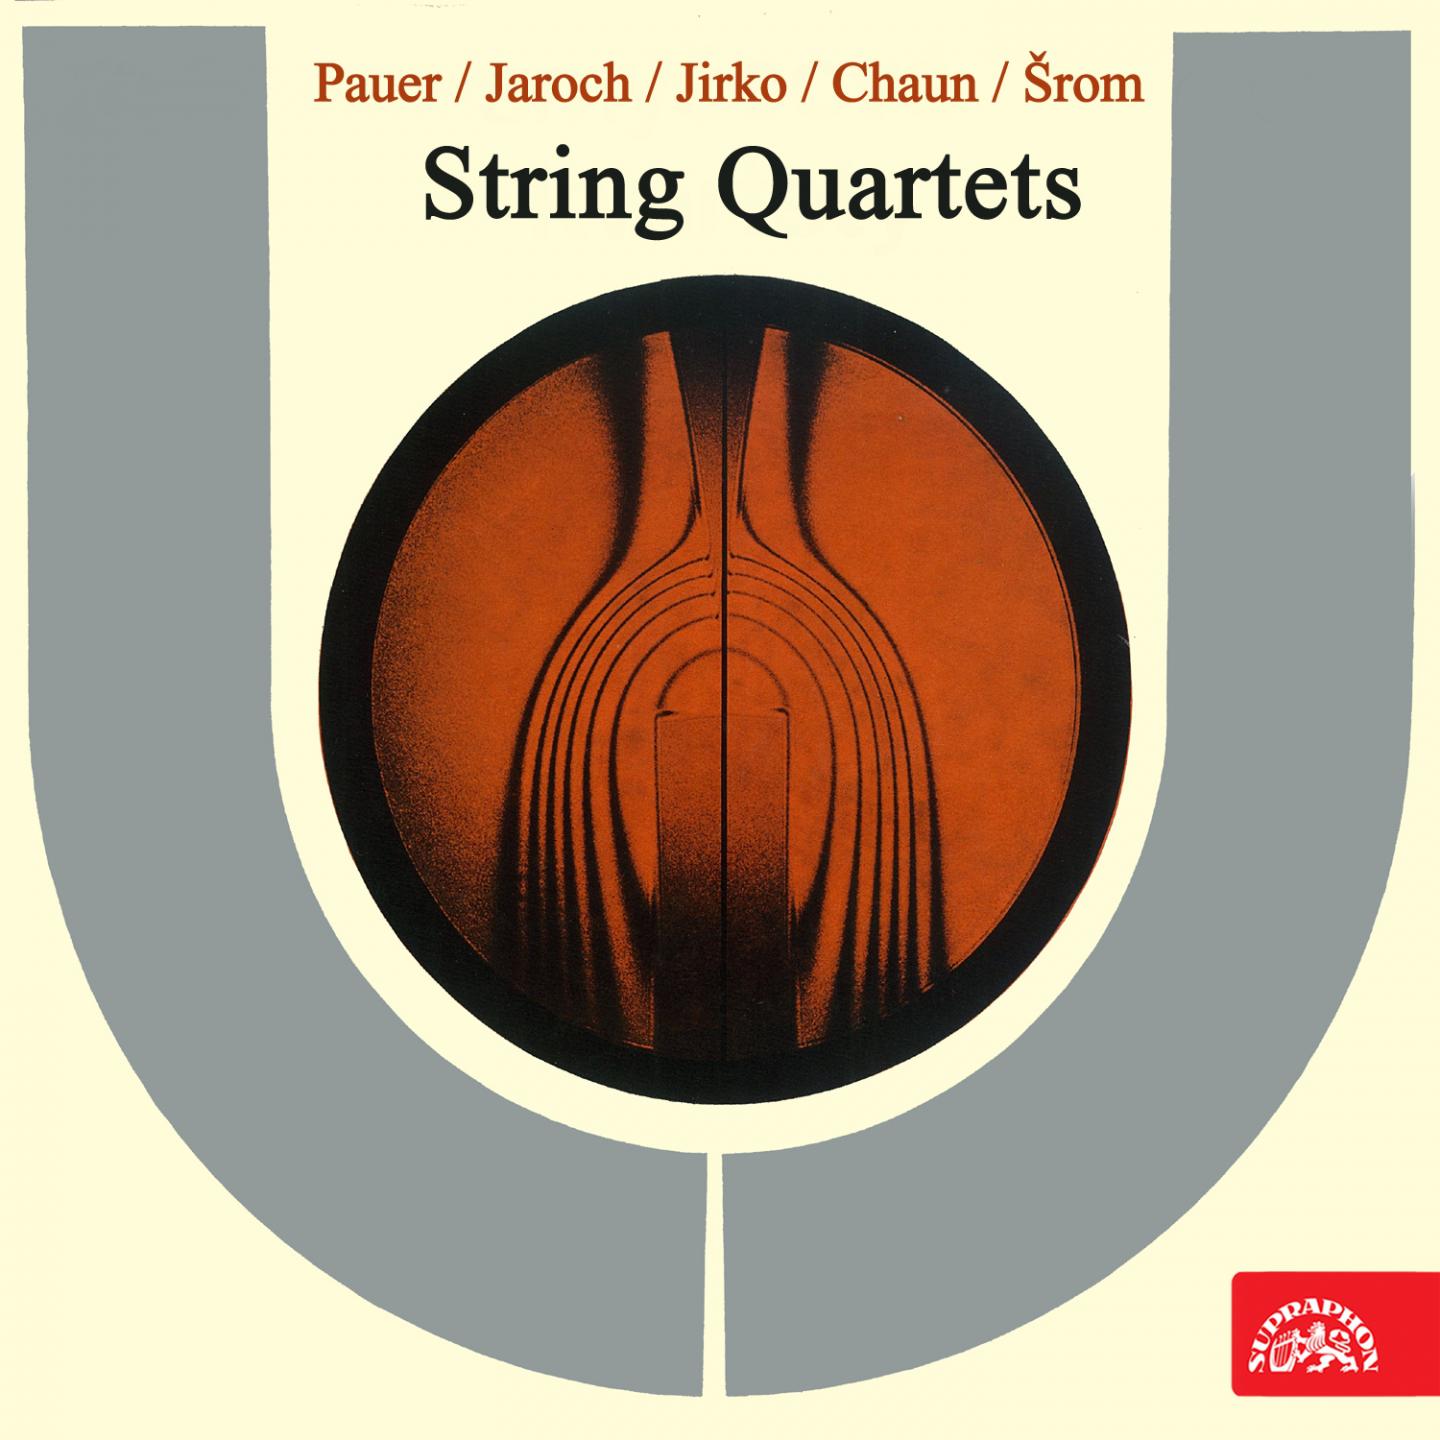 Pauer, Jaroch, Jirko, Chaun, rom: String Quartets